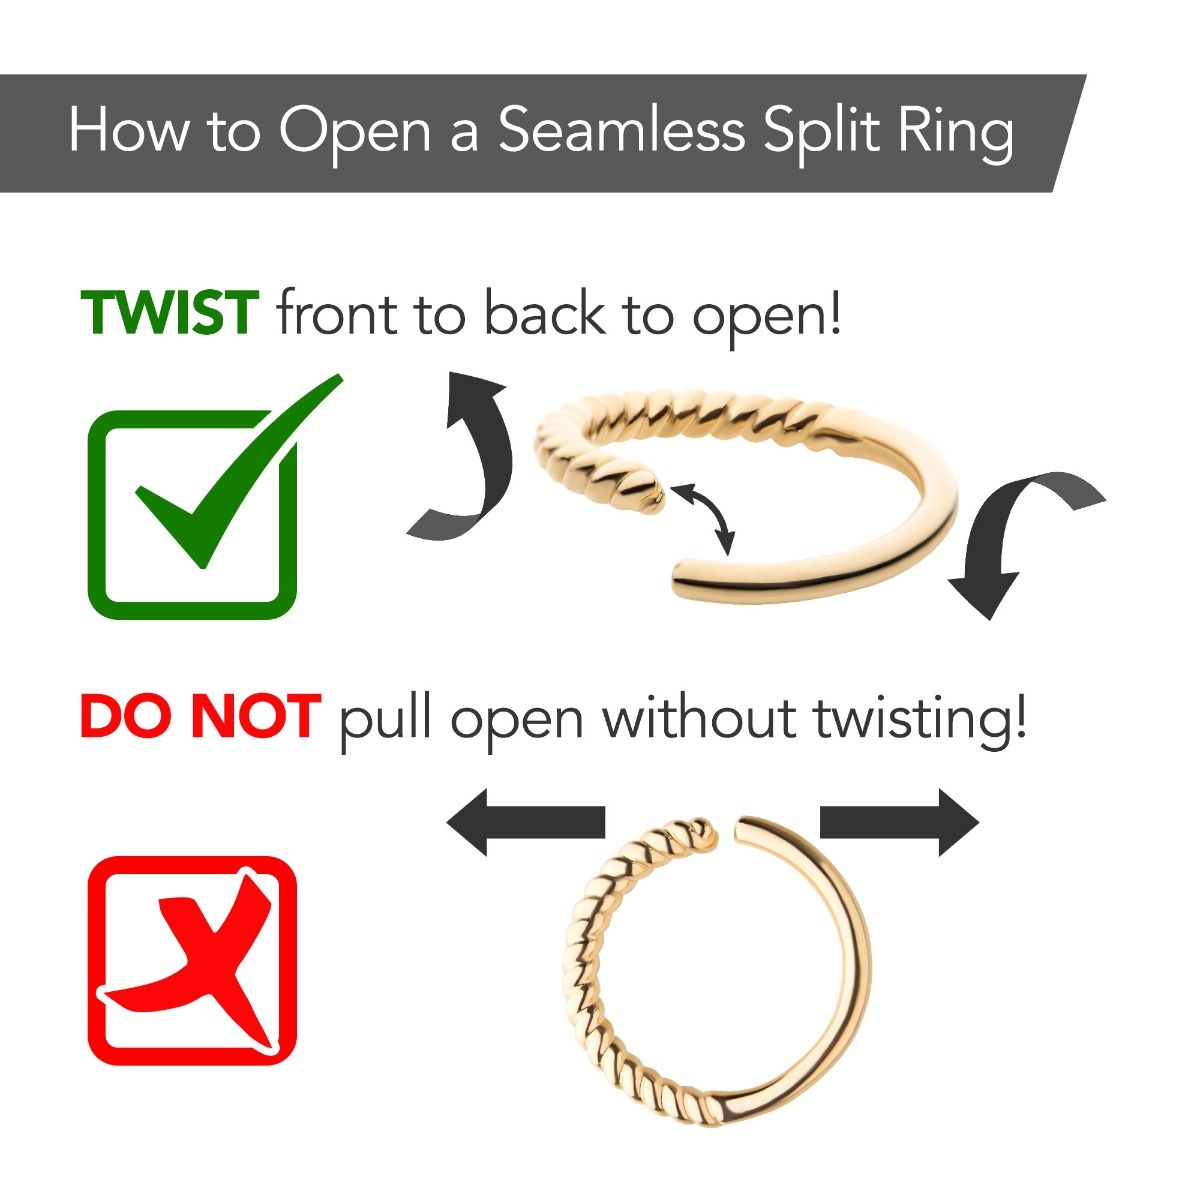 SEAMLESS RING 18g Steel Seamless Ring - 1 Piece #SPLT#6 -Rebel Bod-RebelBod